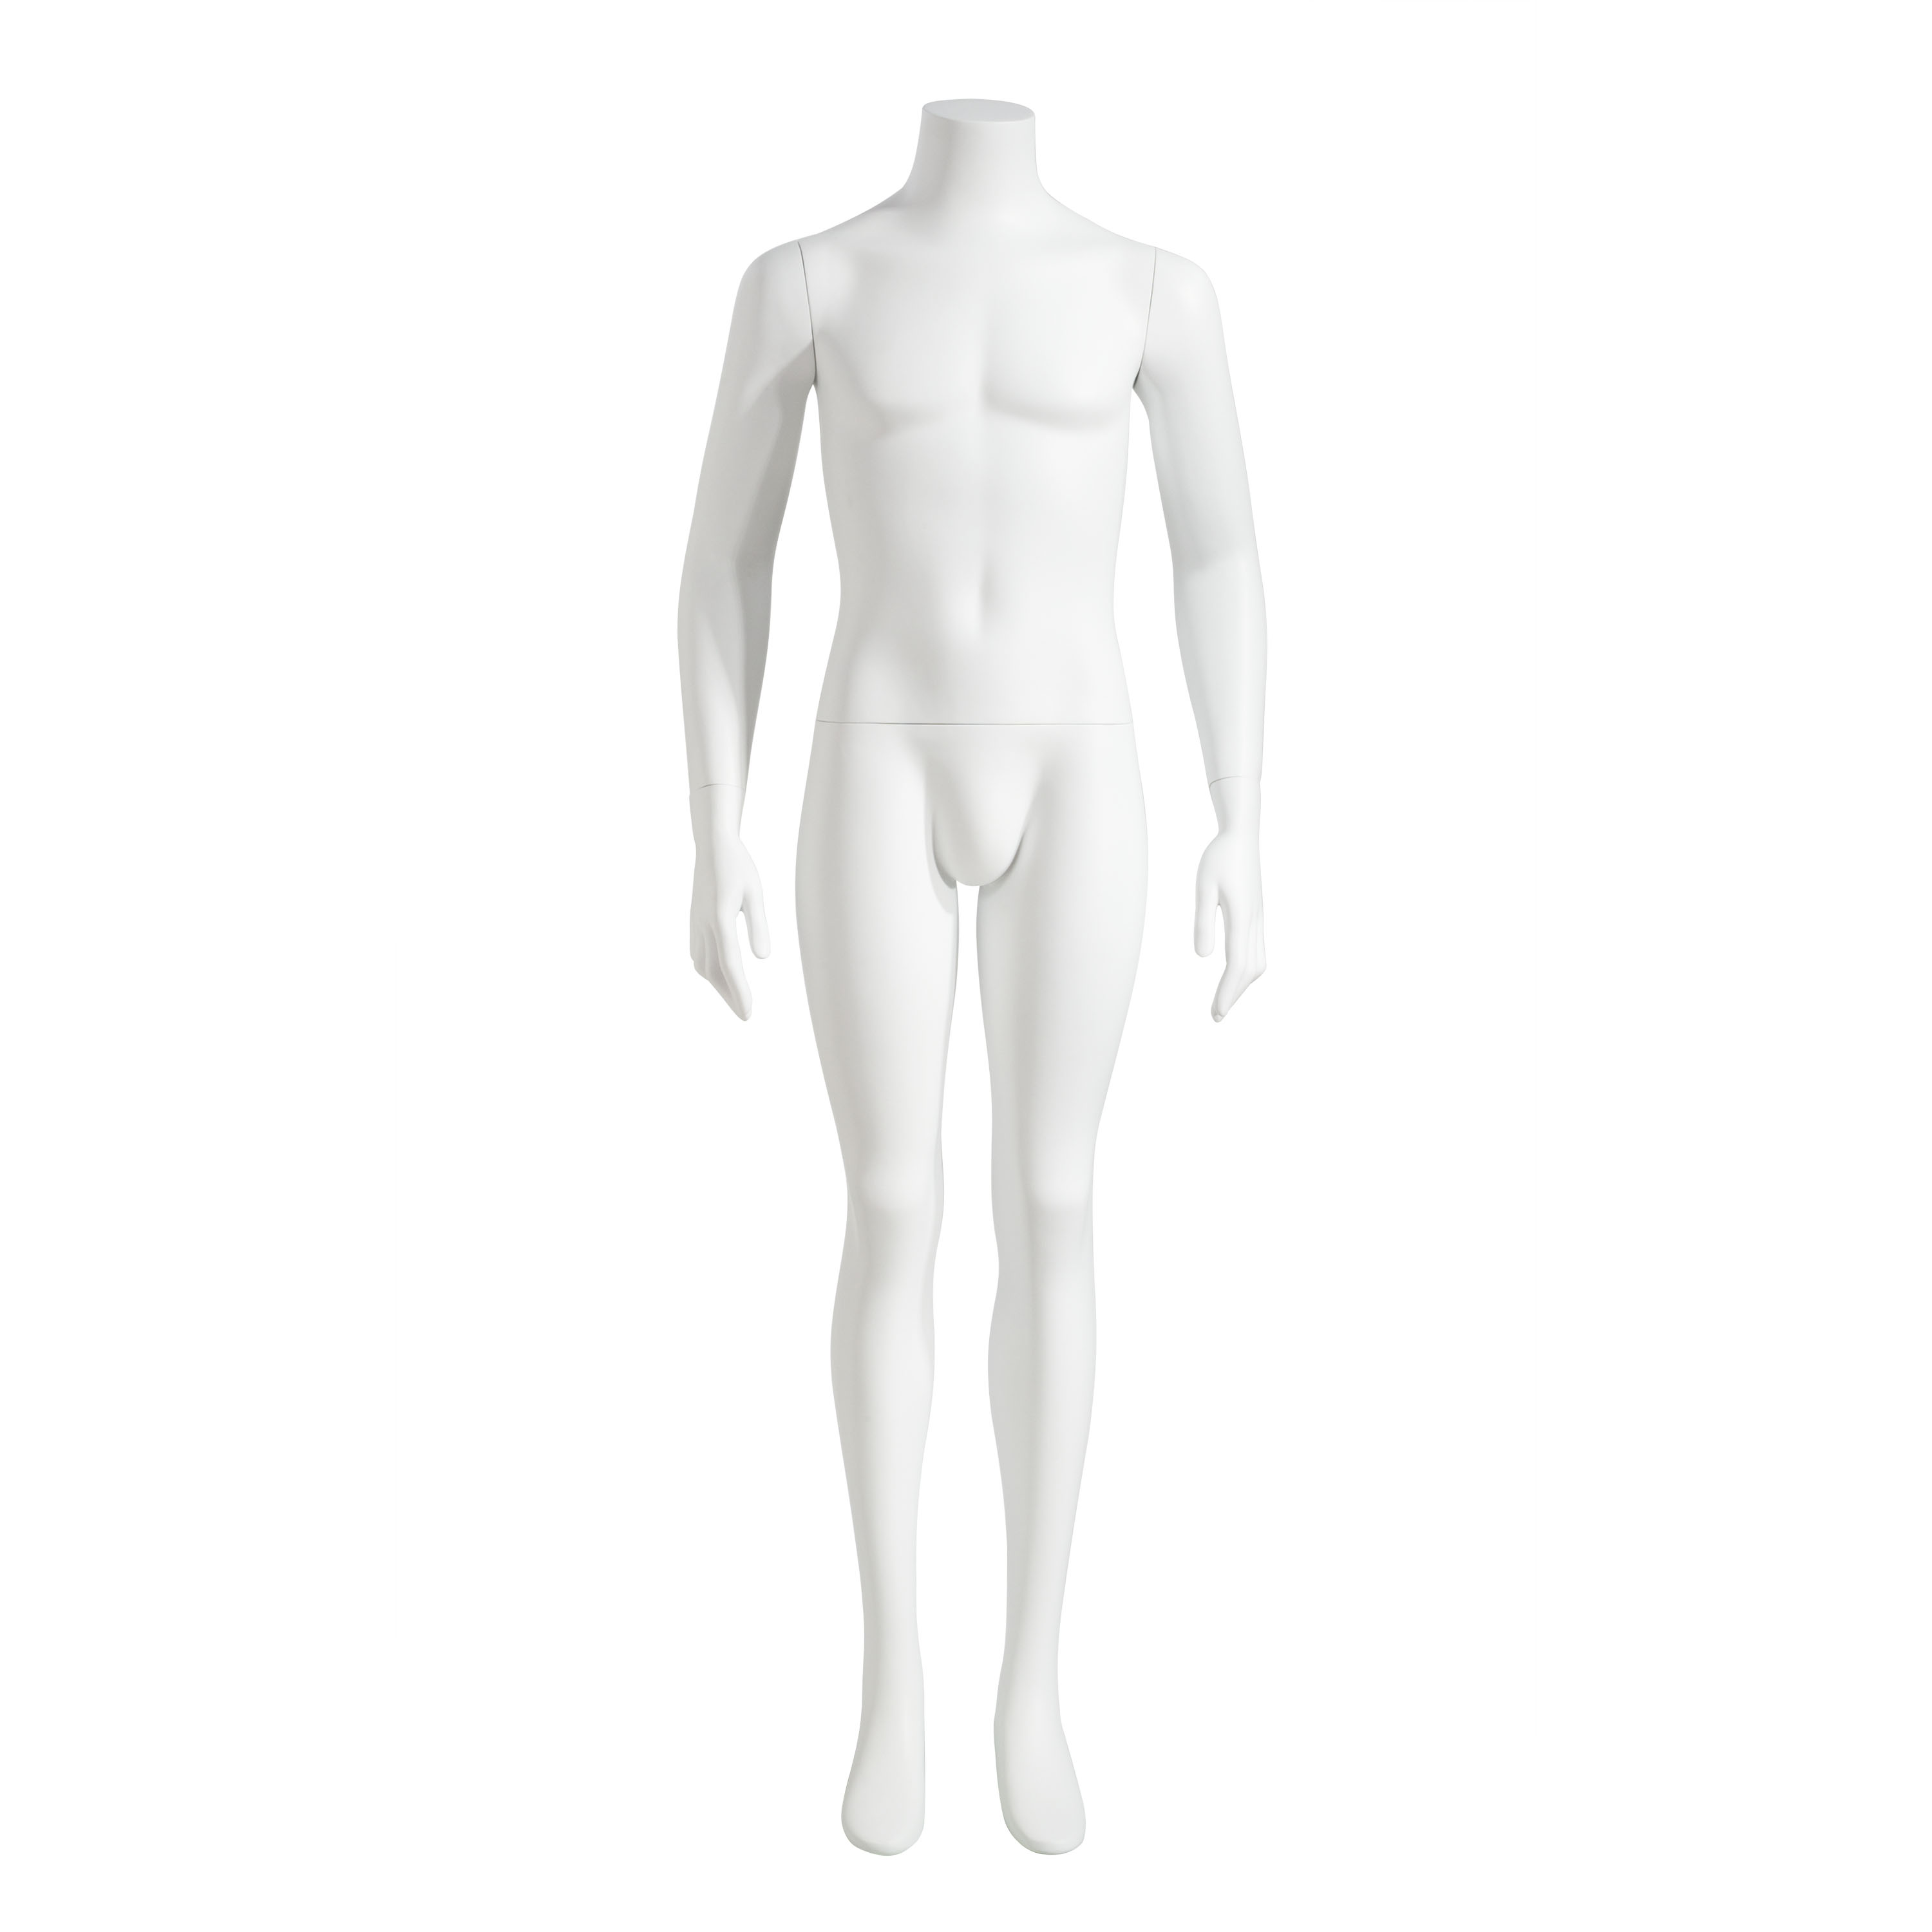 Male Headless Mannequin Full Body 